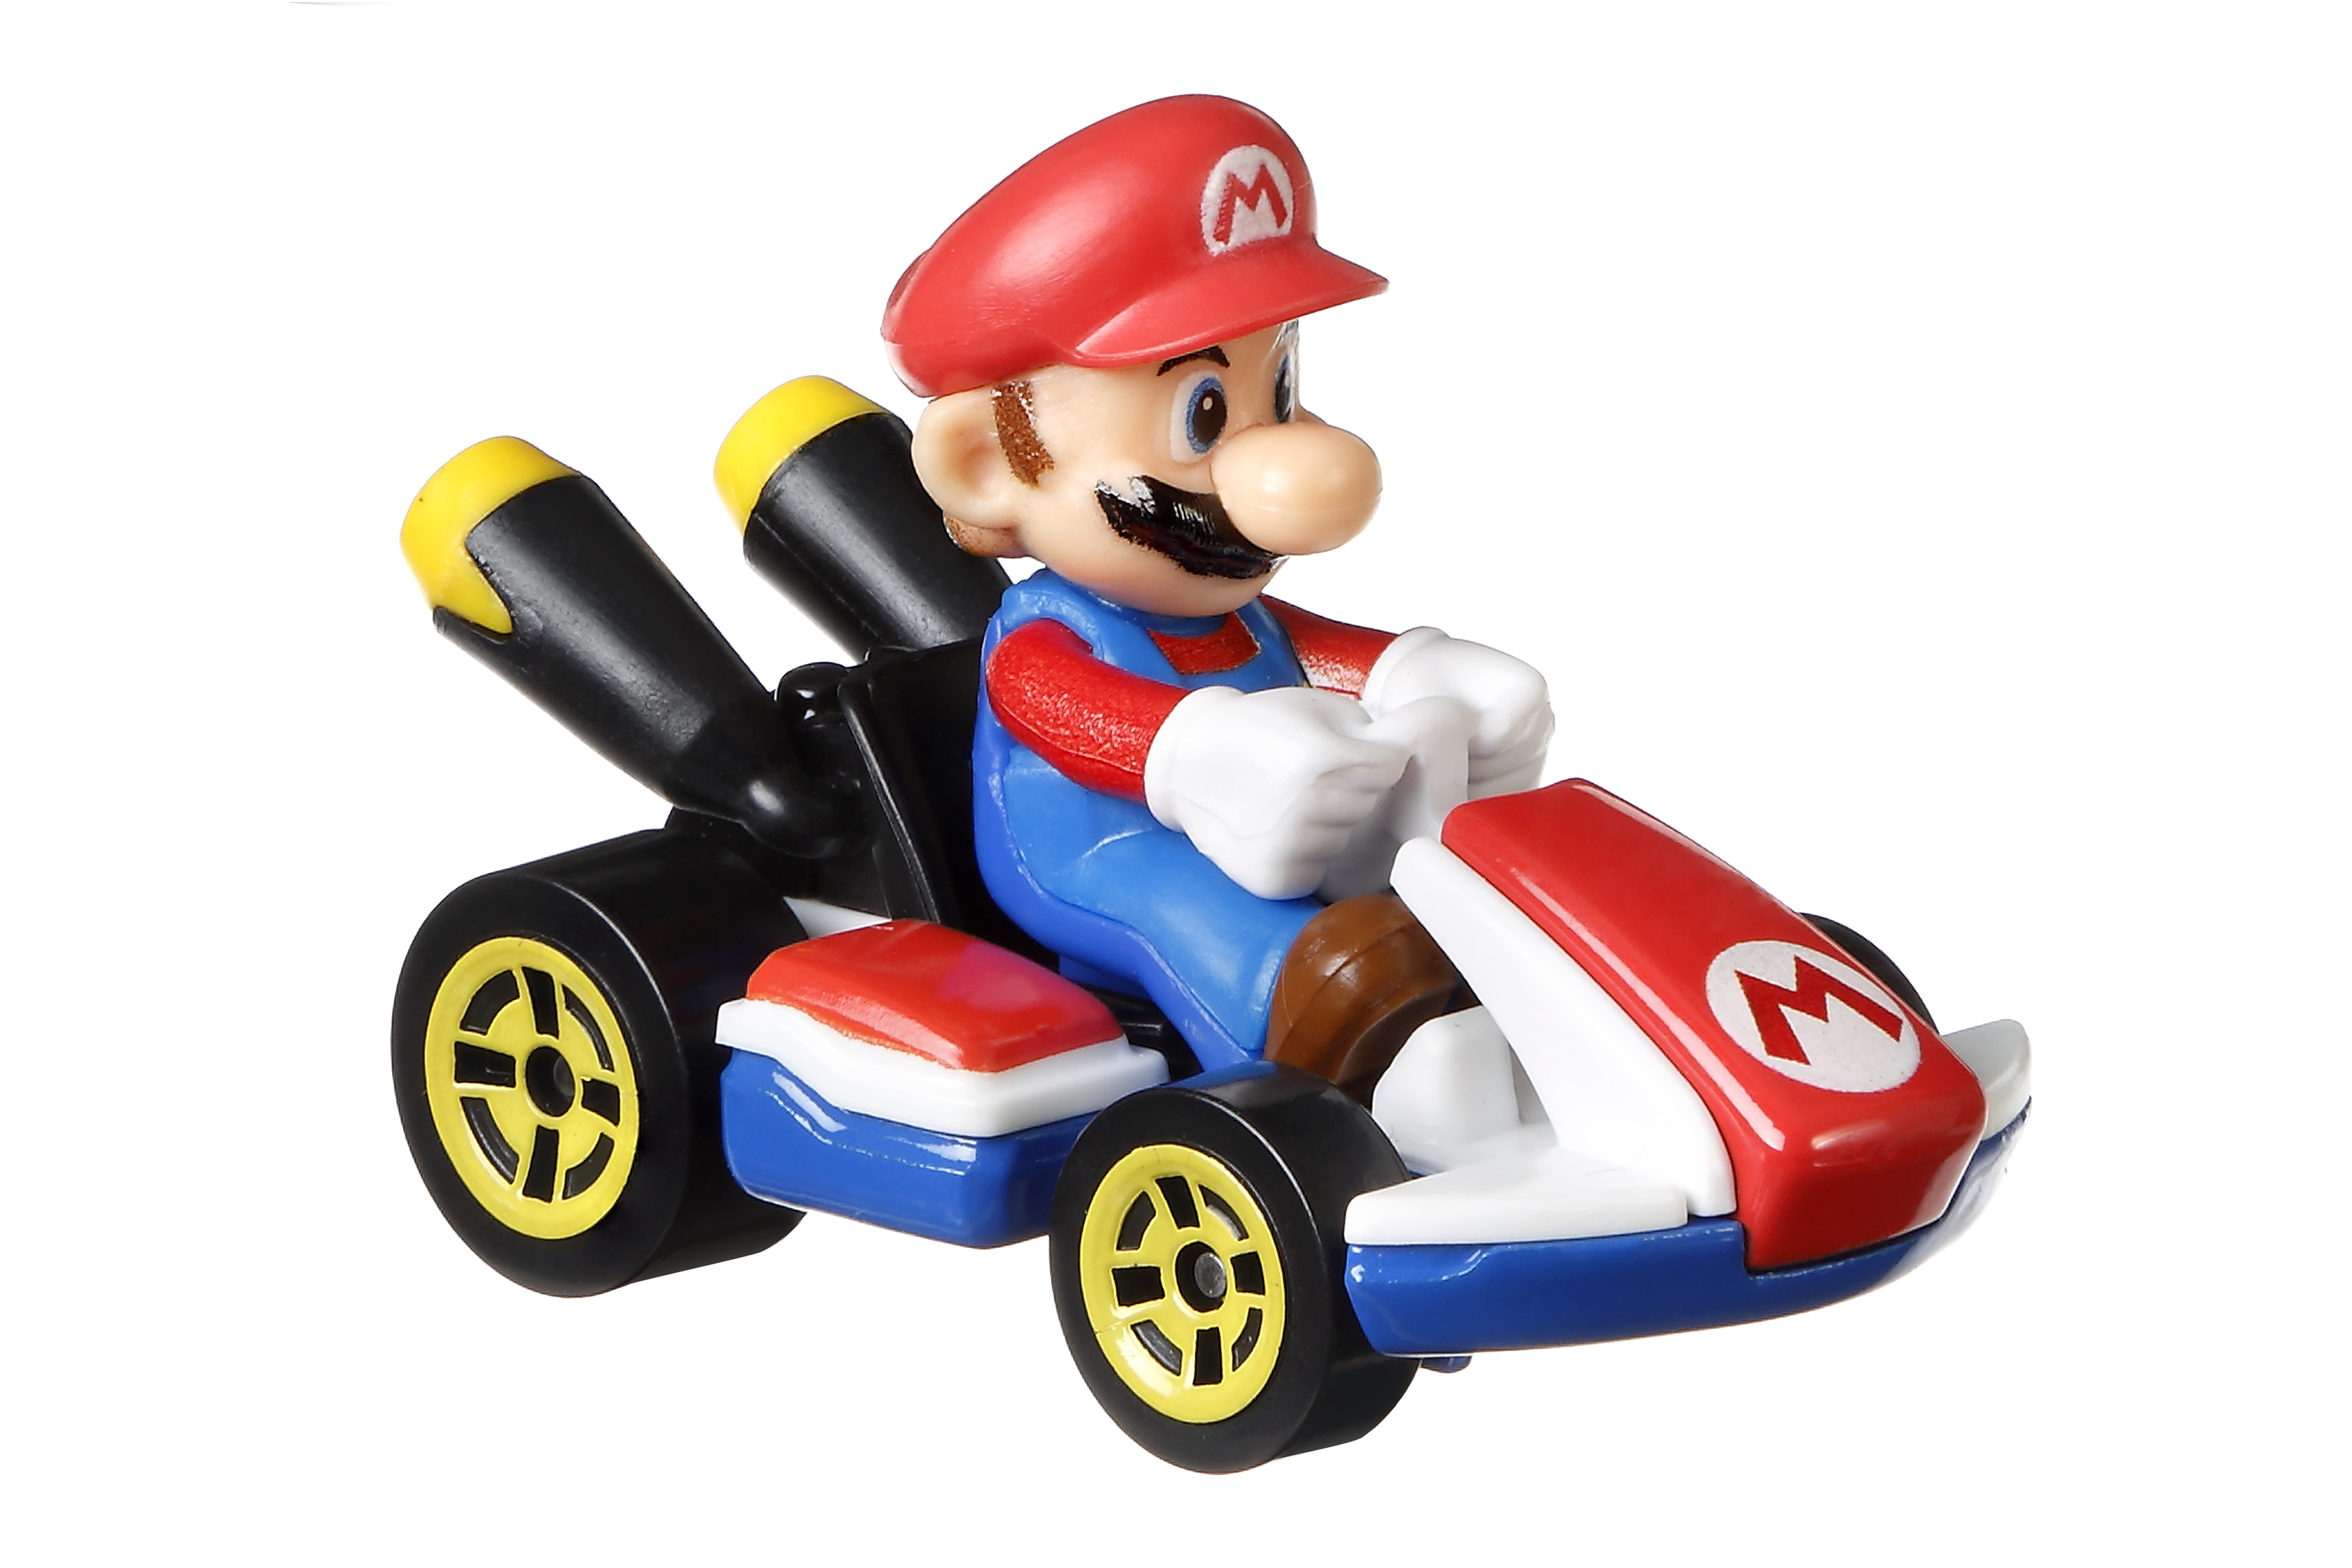 jouet pour enfant inspiré par les personnages et voitures du jeu Bowser et Yoshi Luigi Hot Wheels Mario Kart mini-véhicules Mario échelle 1:64 GLN53 